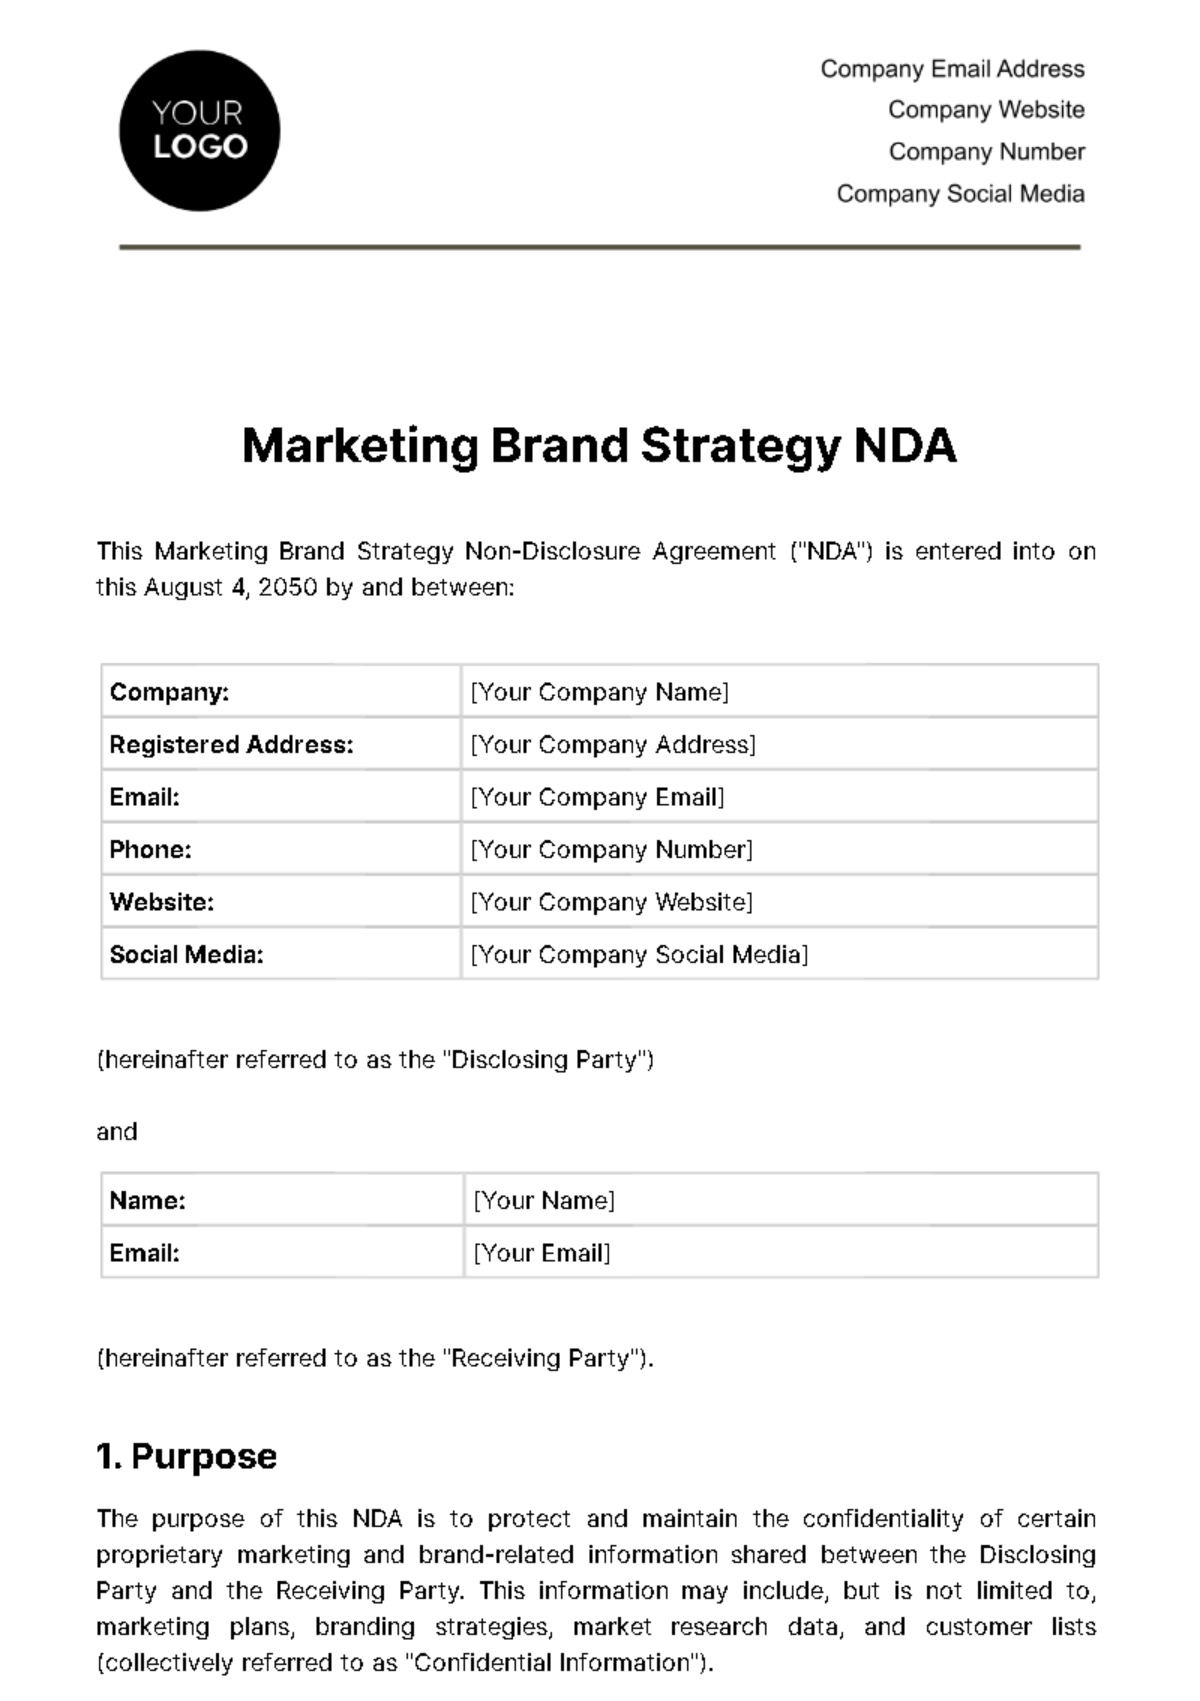 Free Marketing Brand Strategy NDA Template